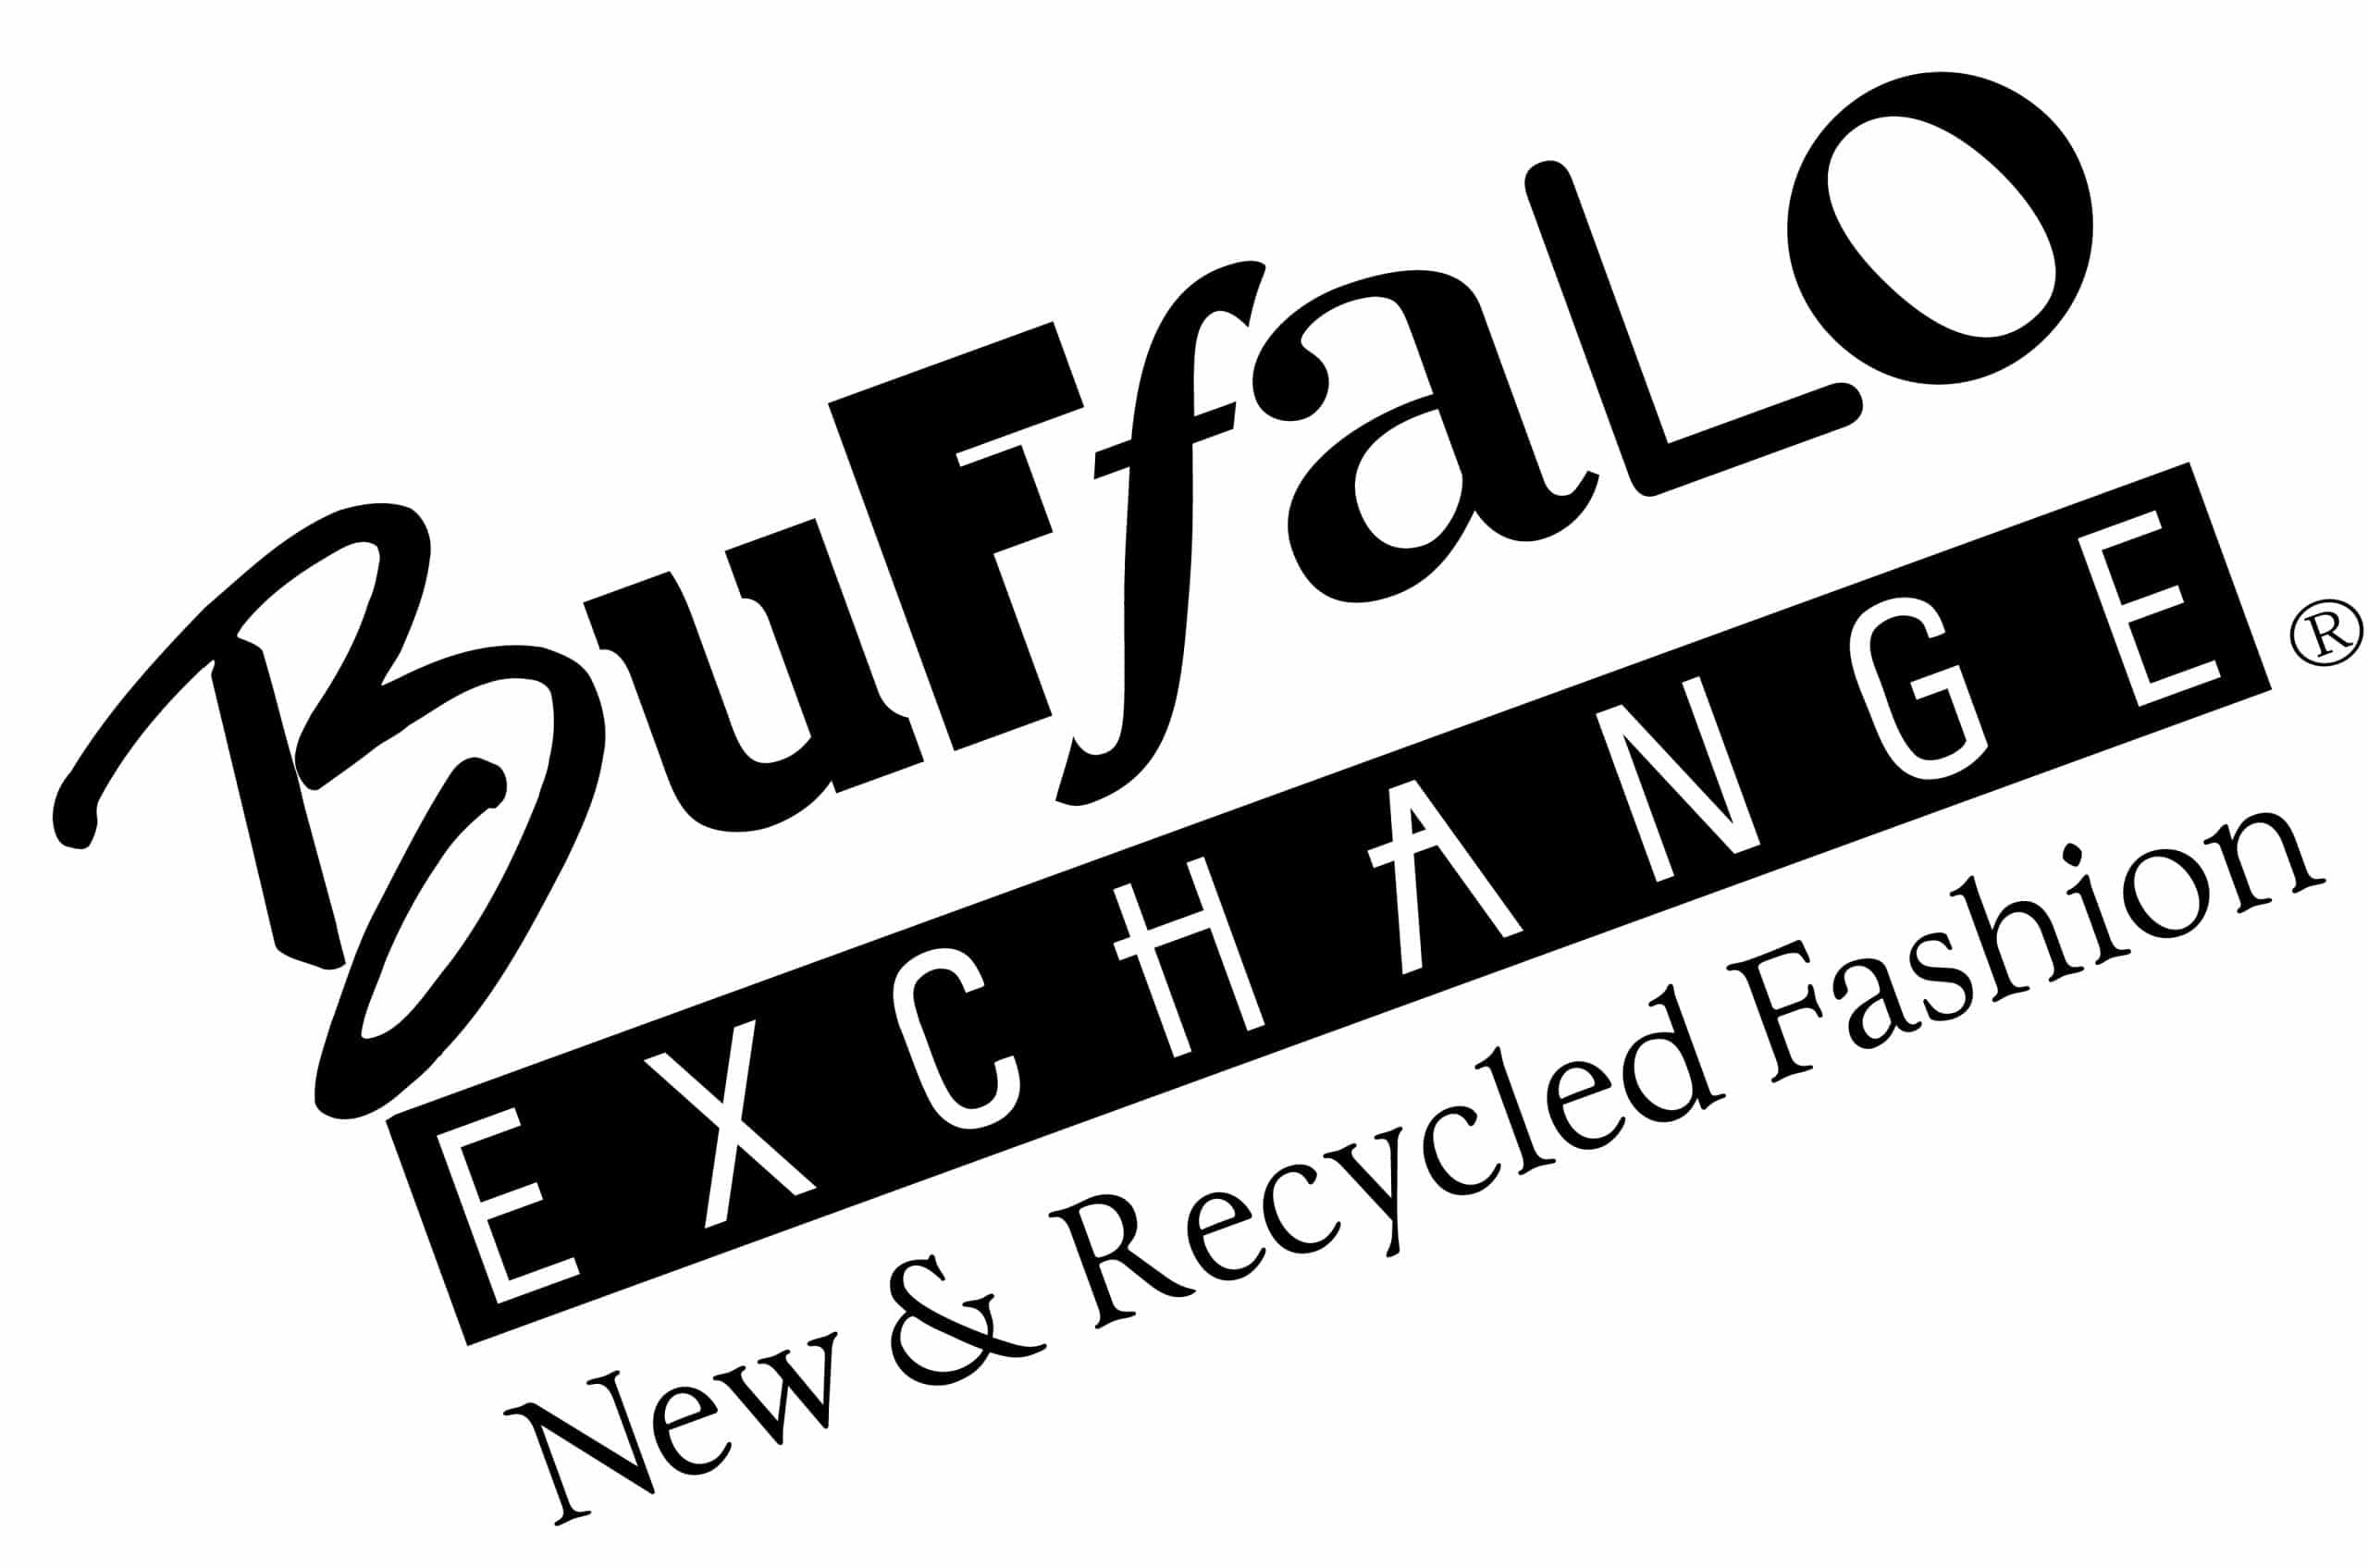 Logotipo de intercambio de búfalo